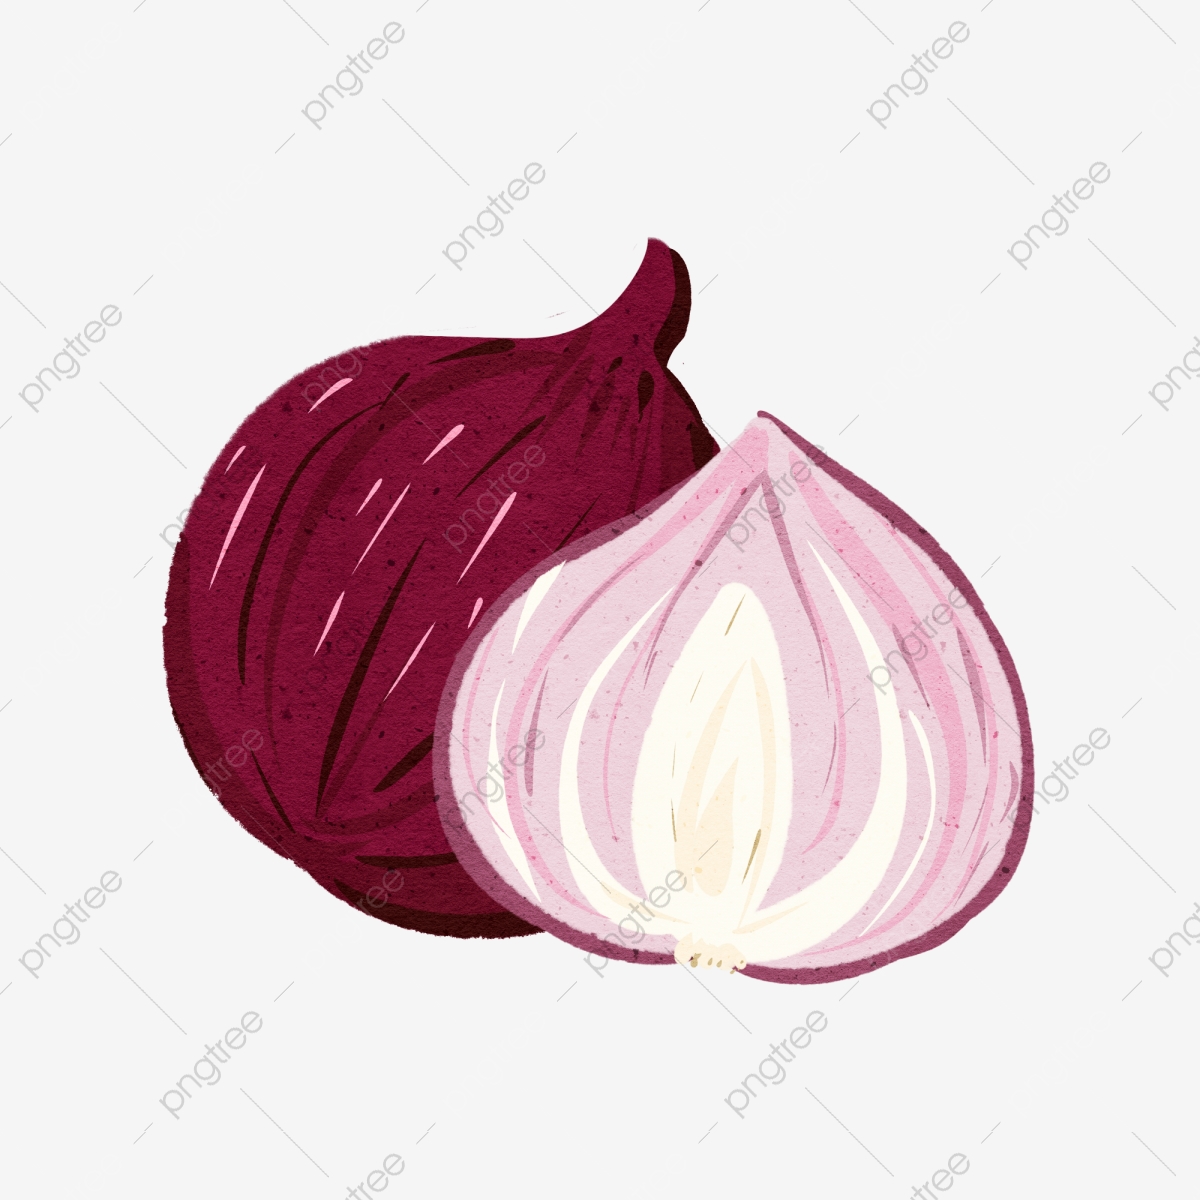 onion clipart file